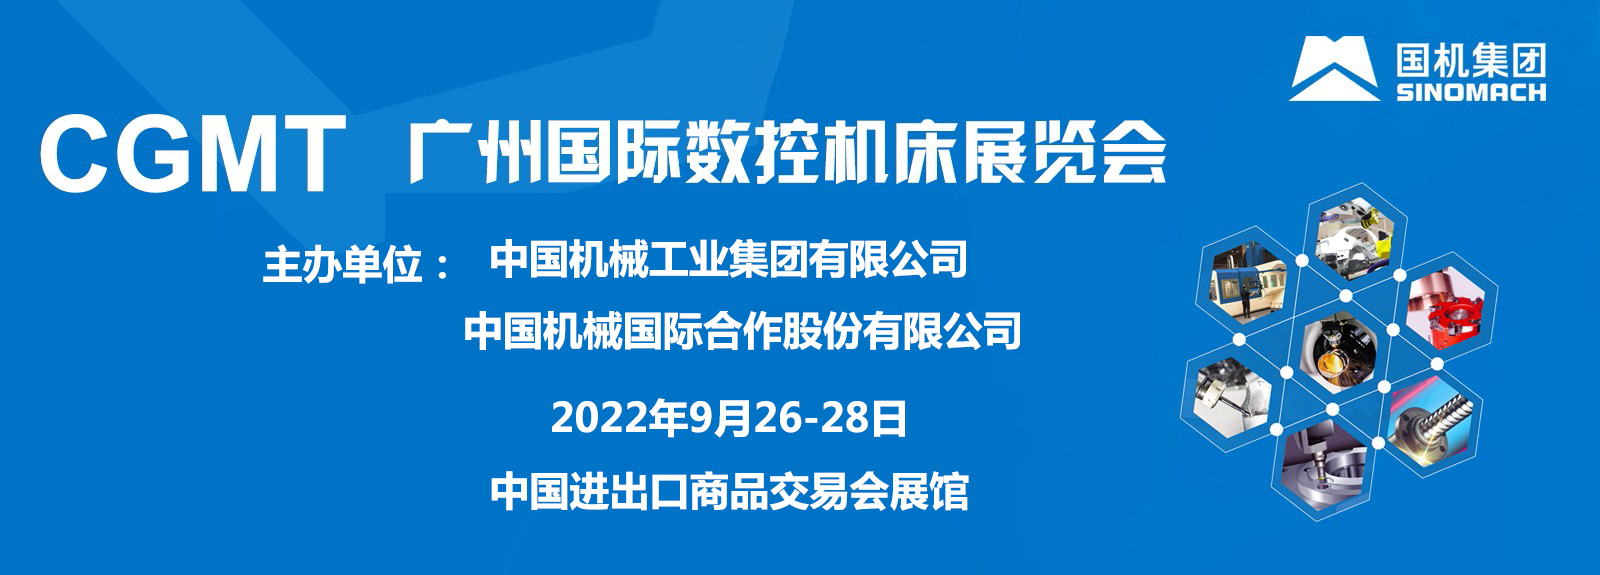 CGMT2022*6届广州国际数控机床展览会